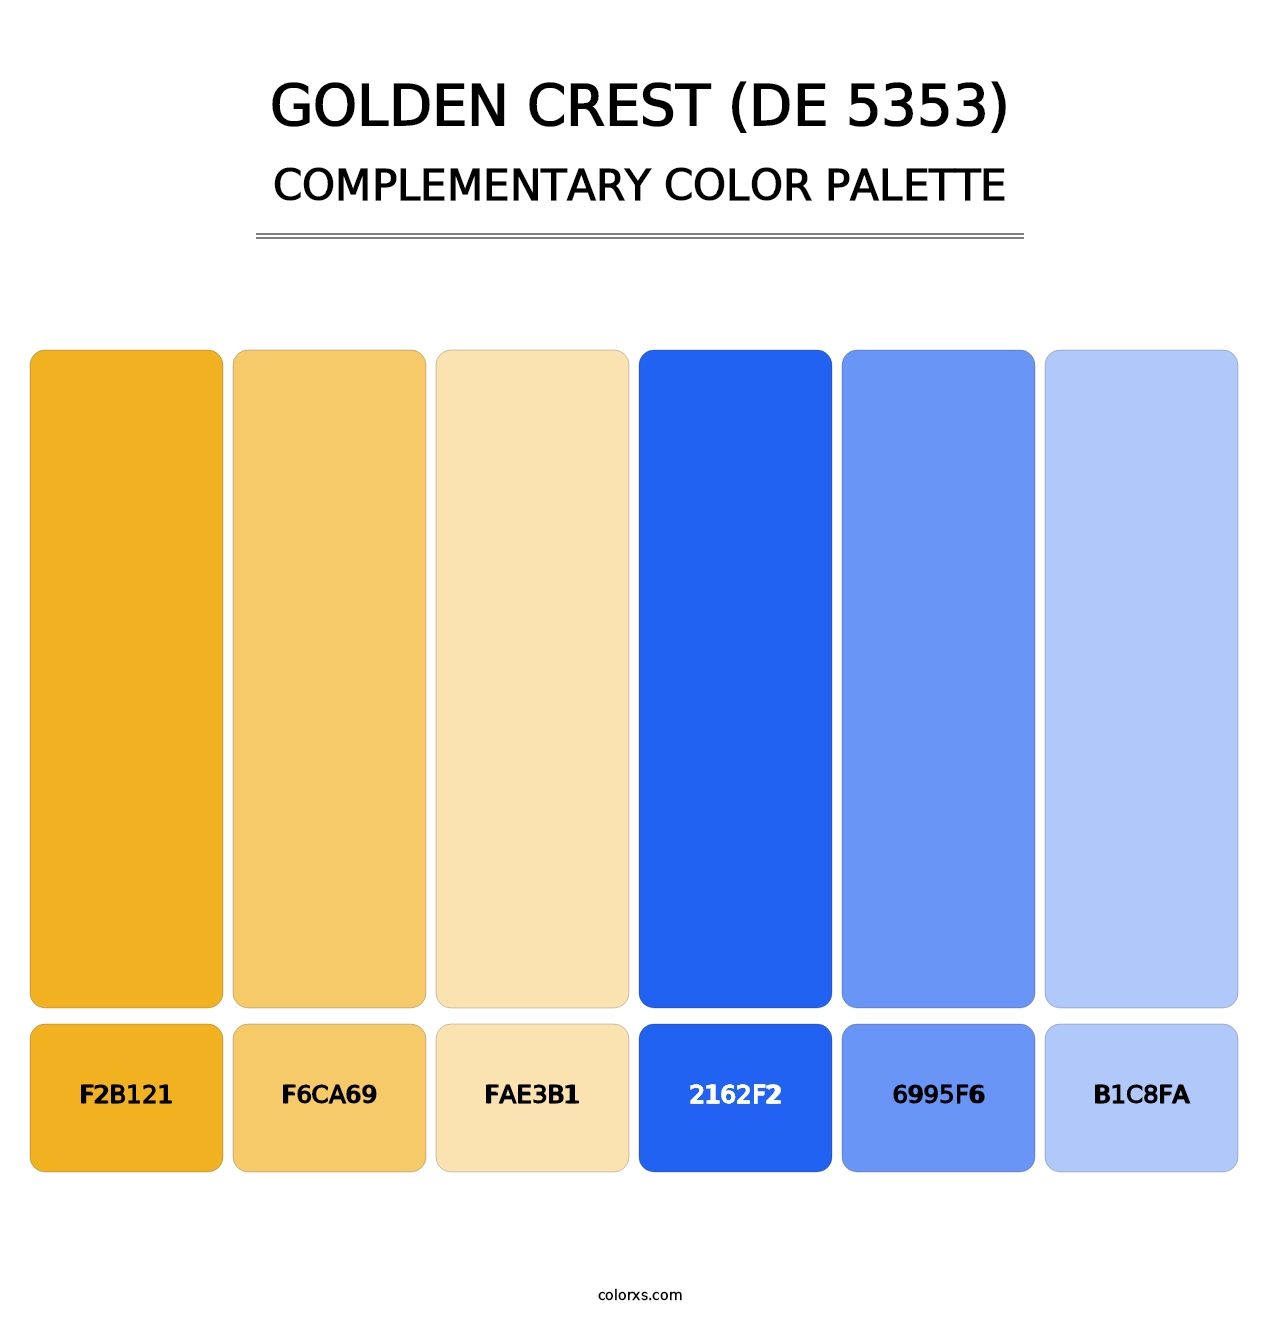 Golden Crest (DE 5353) - Complementary Color Palette